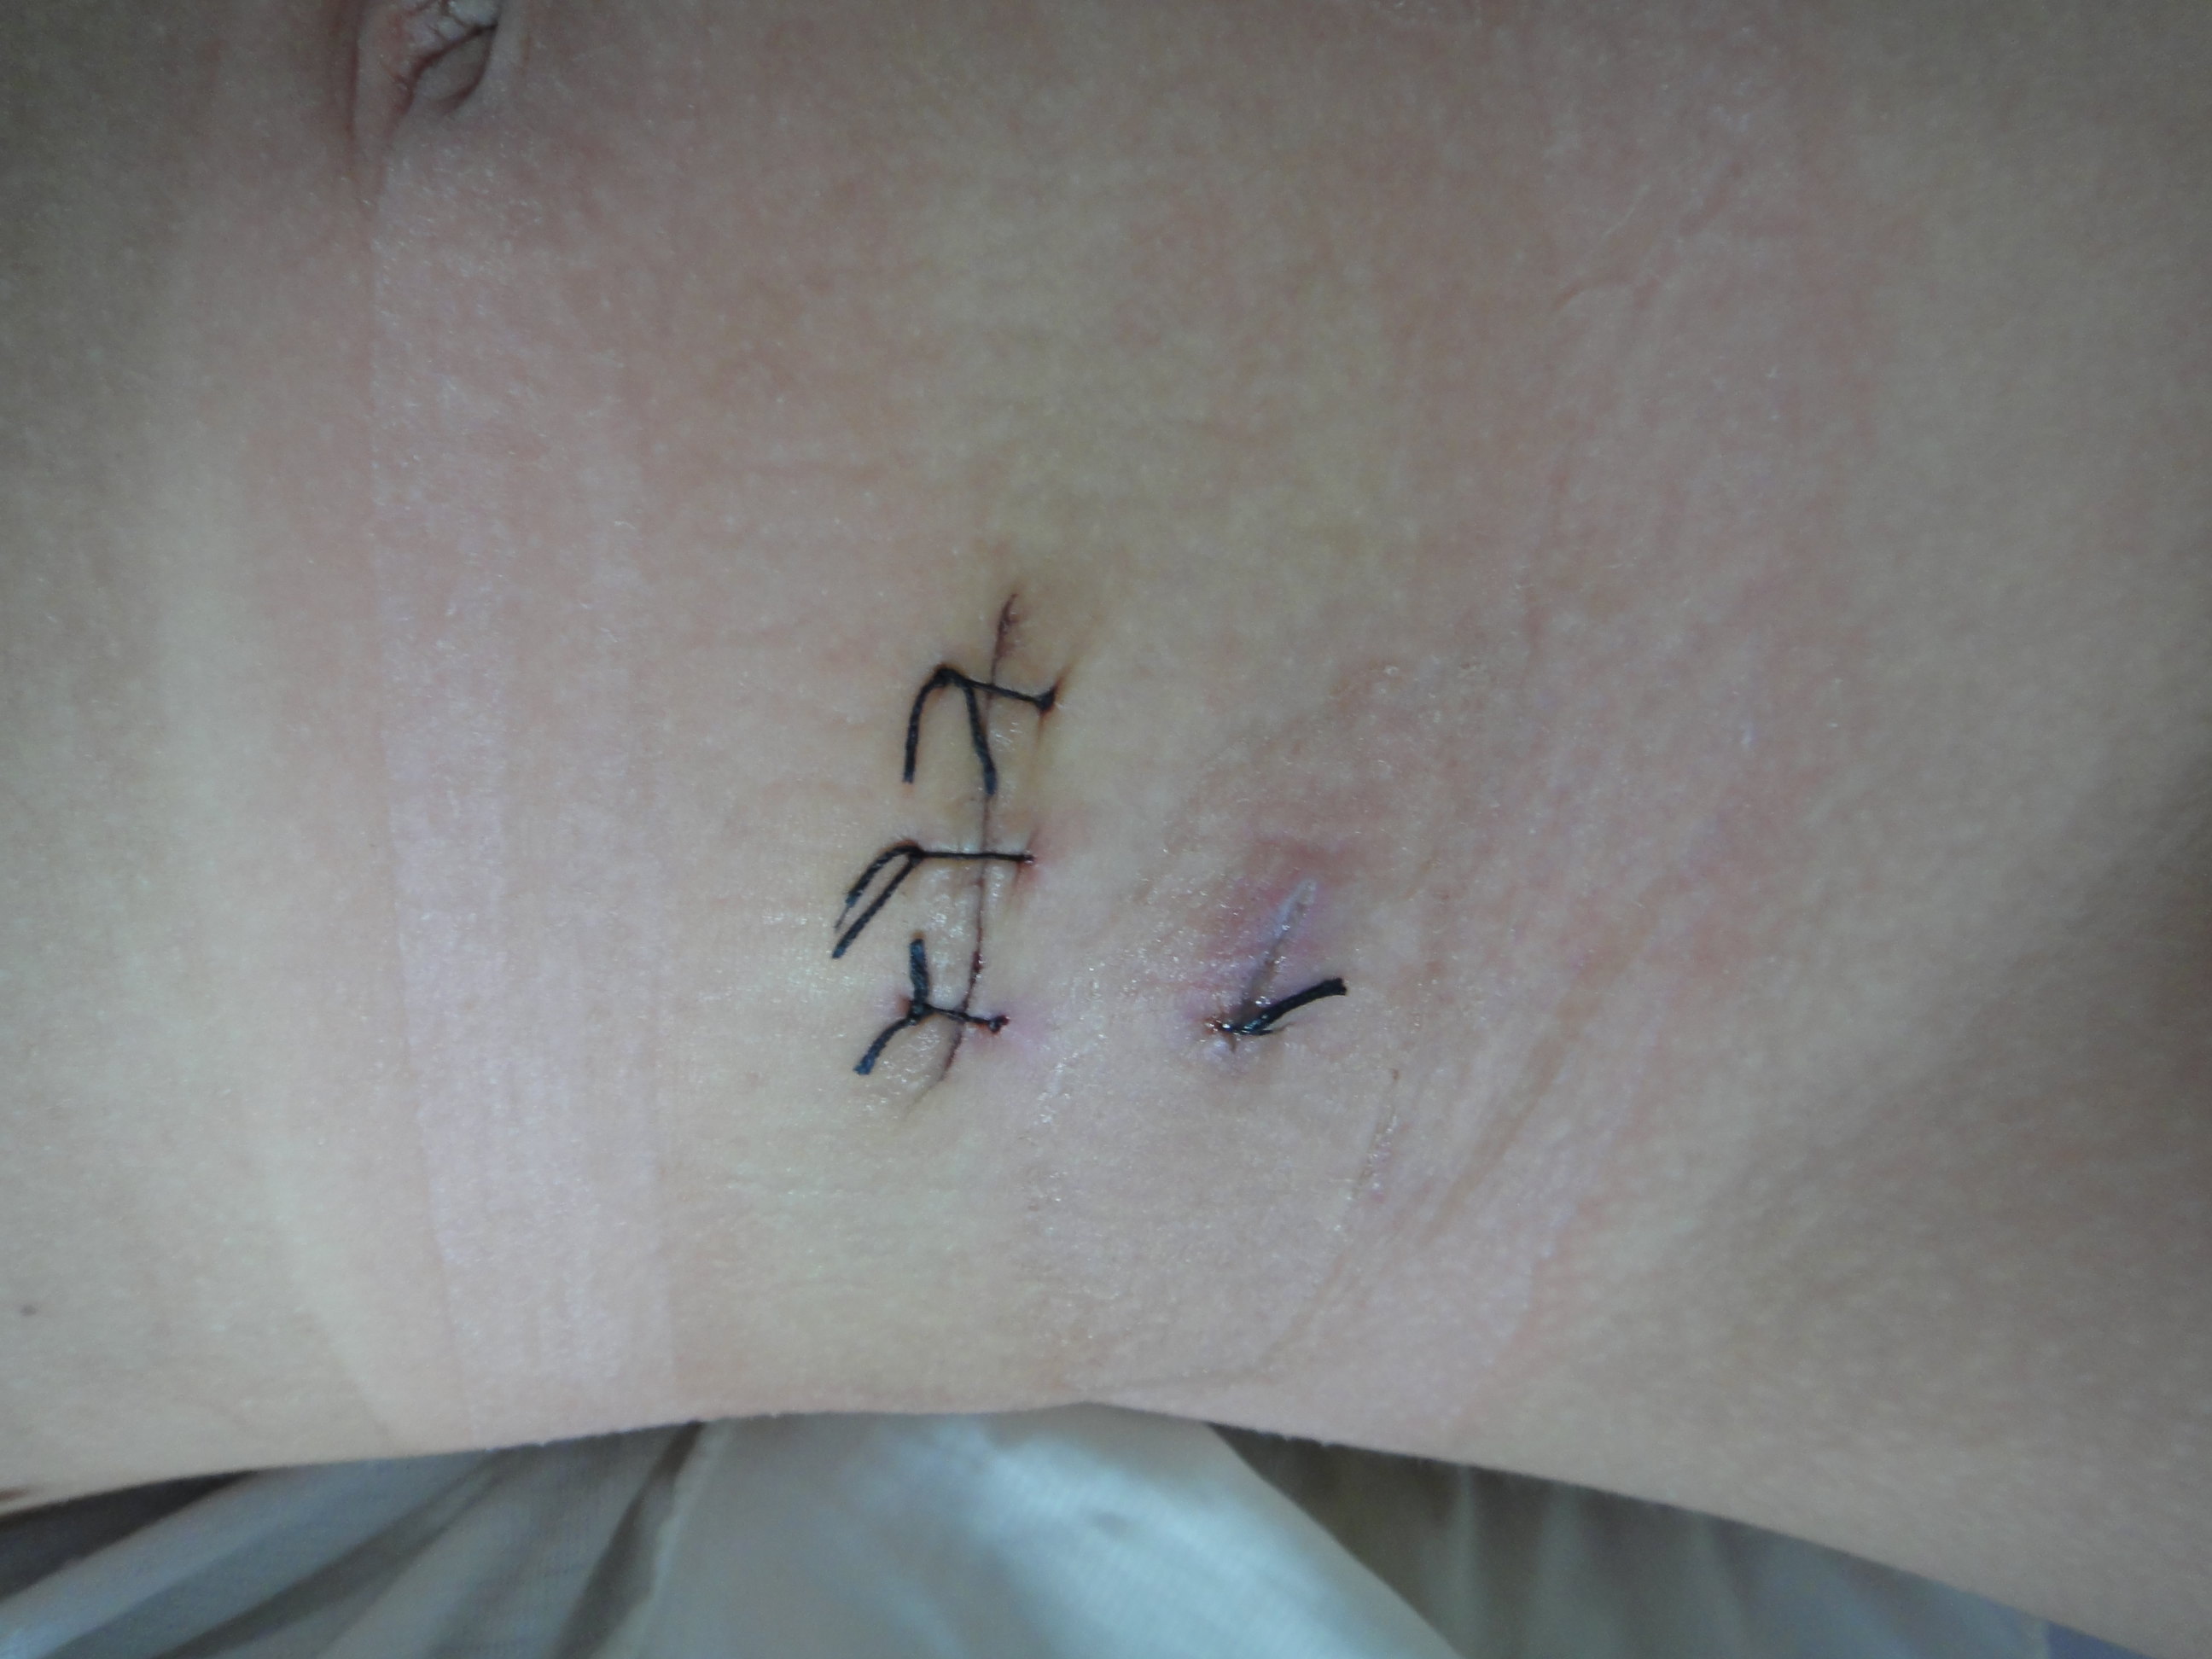 阑尾炎手术后疤痕位置图片